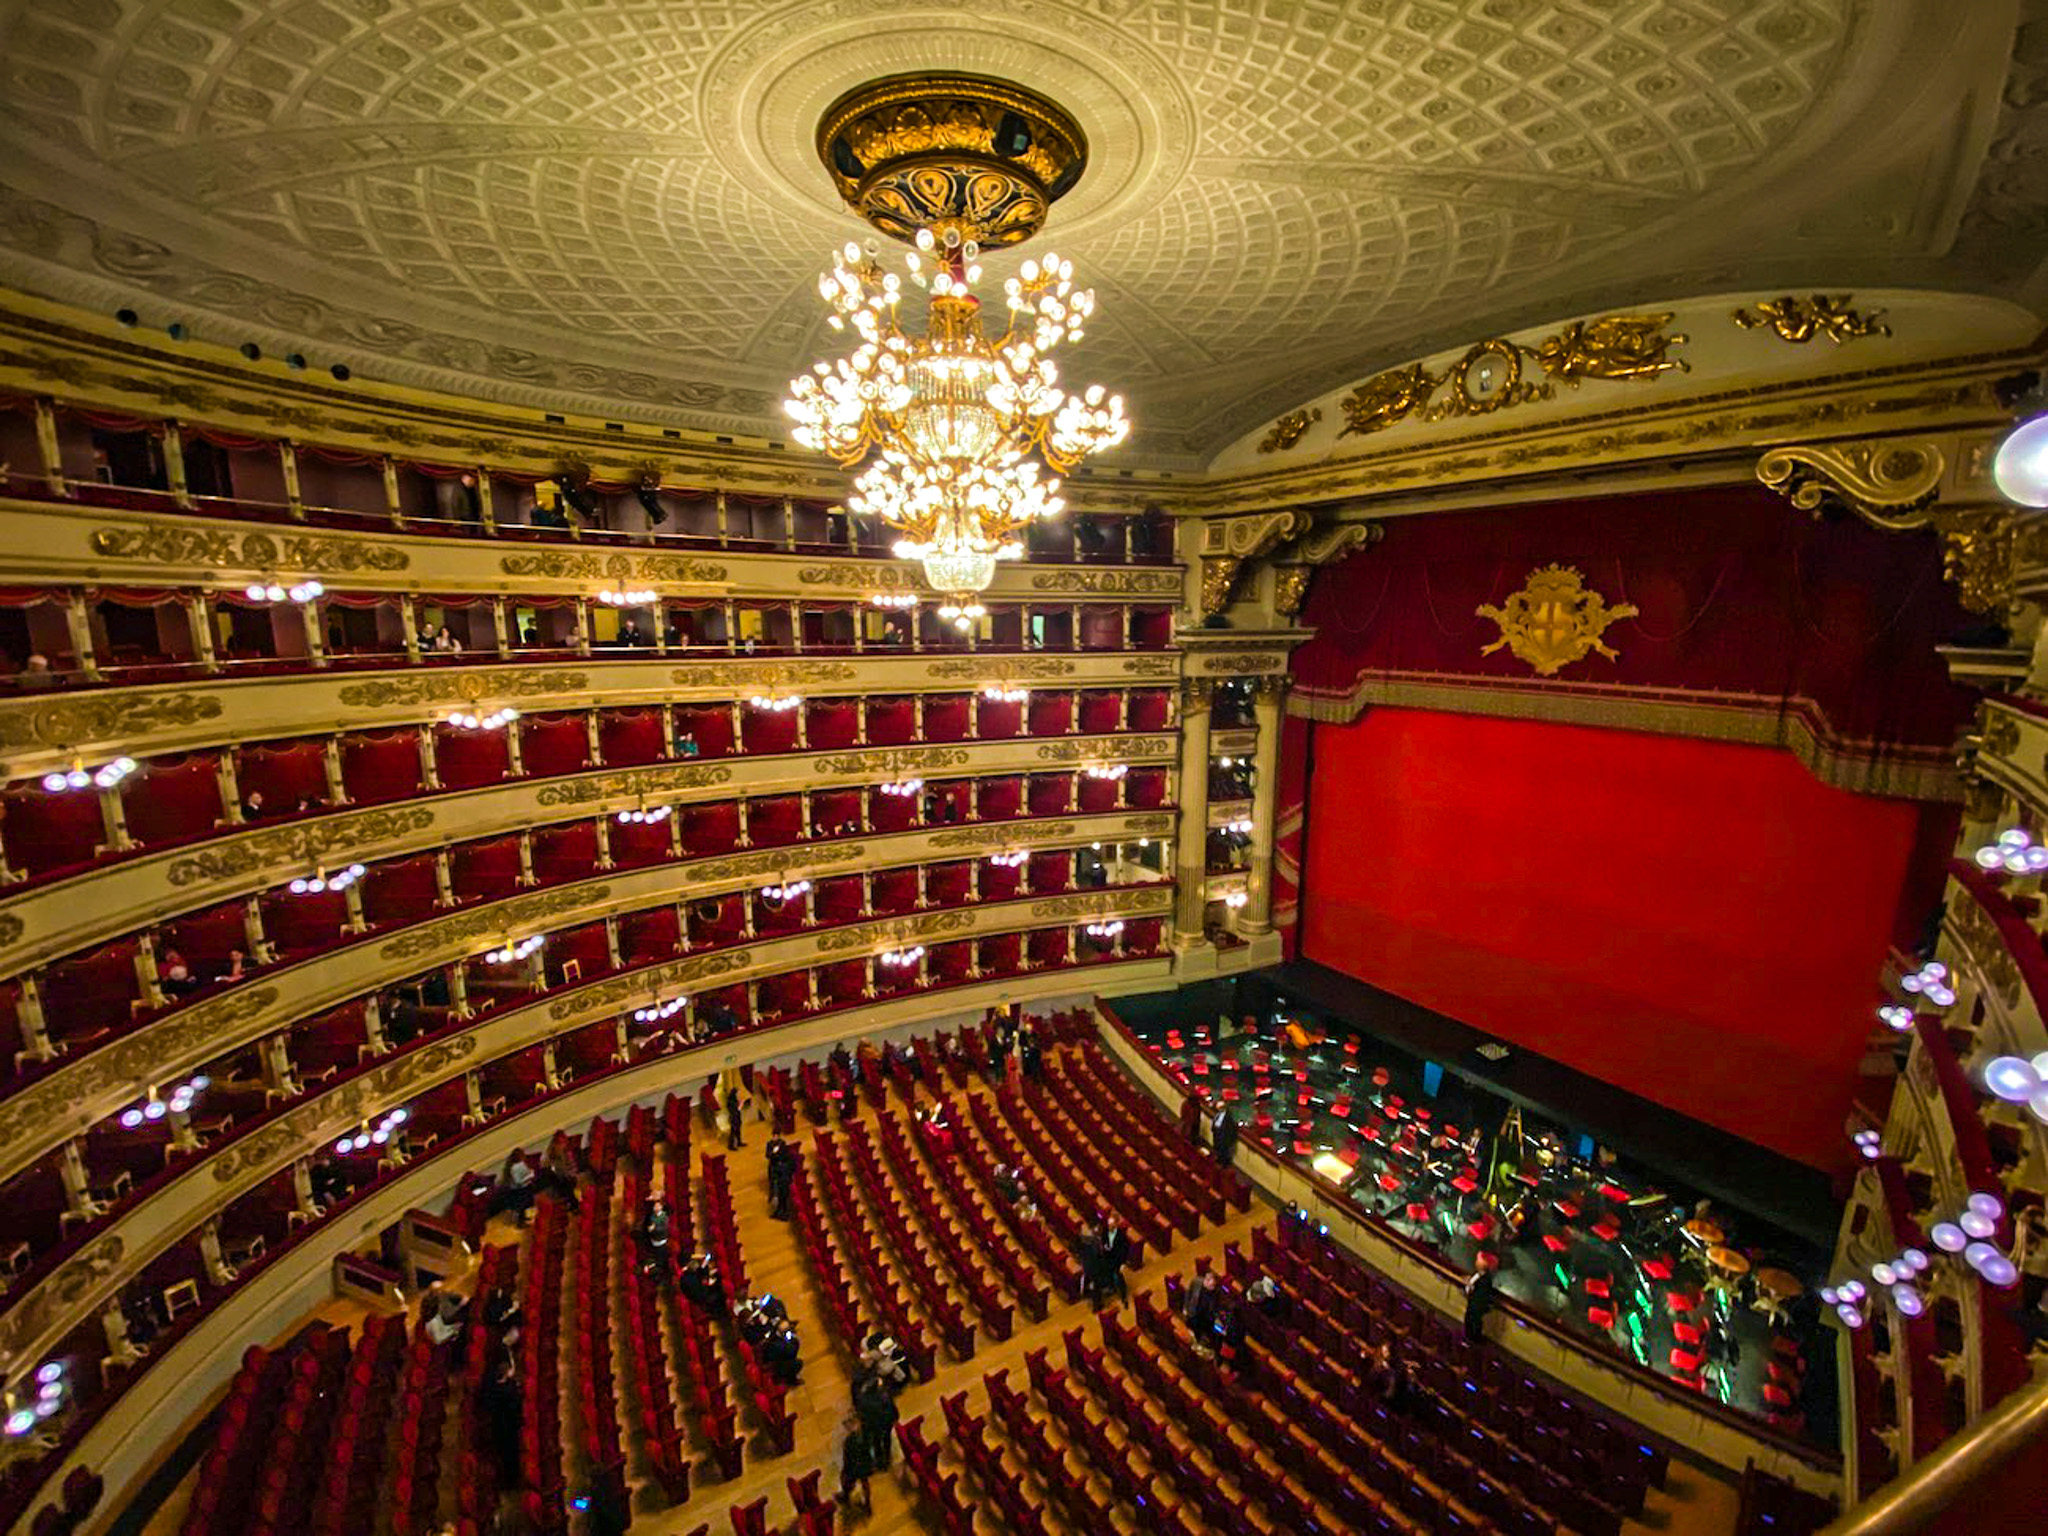 イタリアオペラ界の最高峰、ミラノのスカラ座の天井桟敷席でオペラ鑑賞 